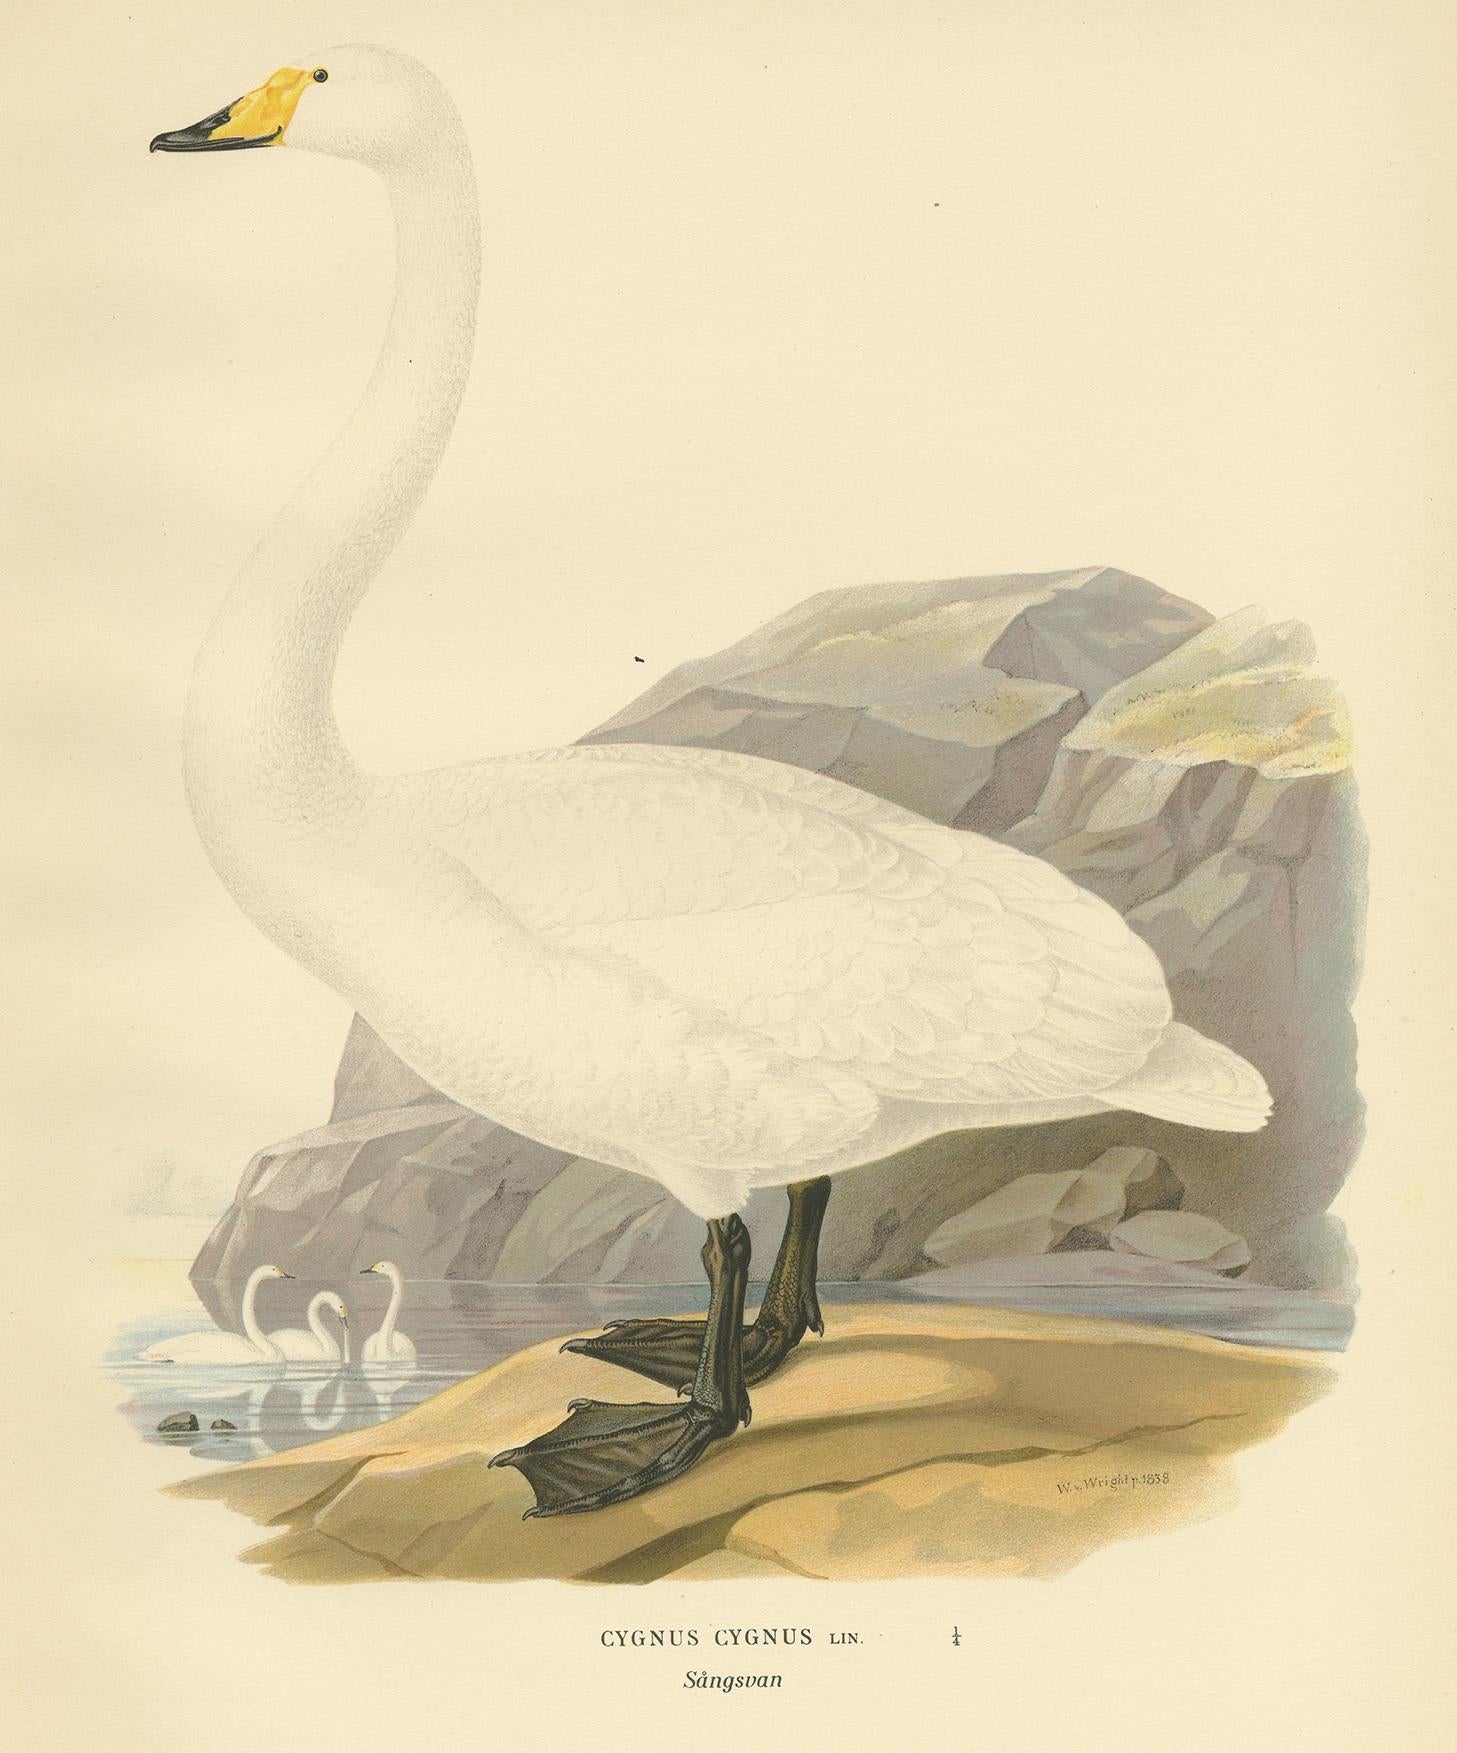 Antiker Vogeldruck mit dem Titel 'Cygnus Cygnus'. Alter Vogeldruck, der den Singschwan darstellt. Dieser Druck stammt aus 